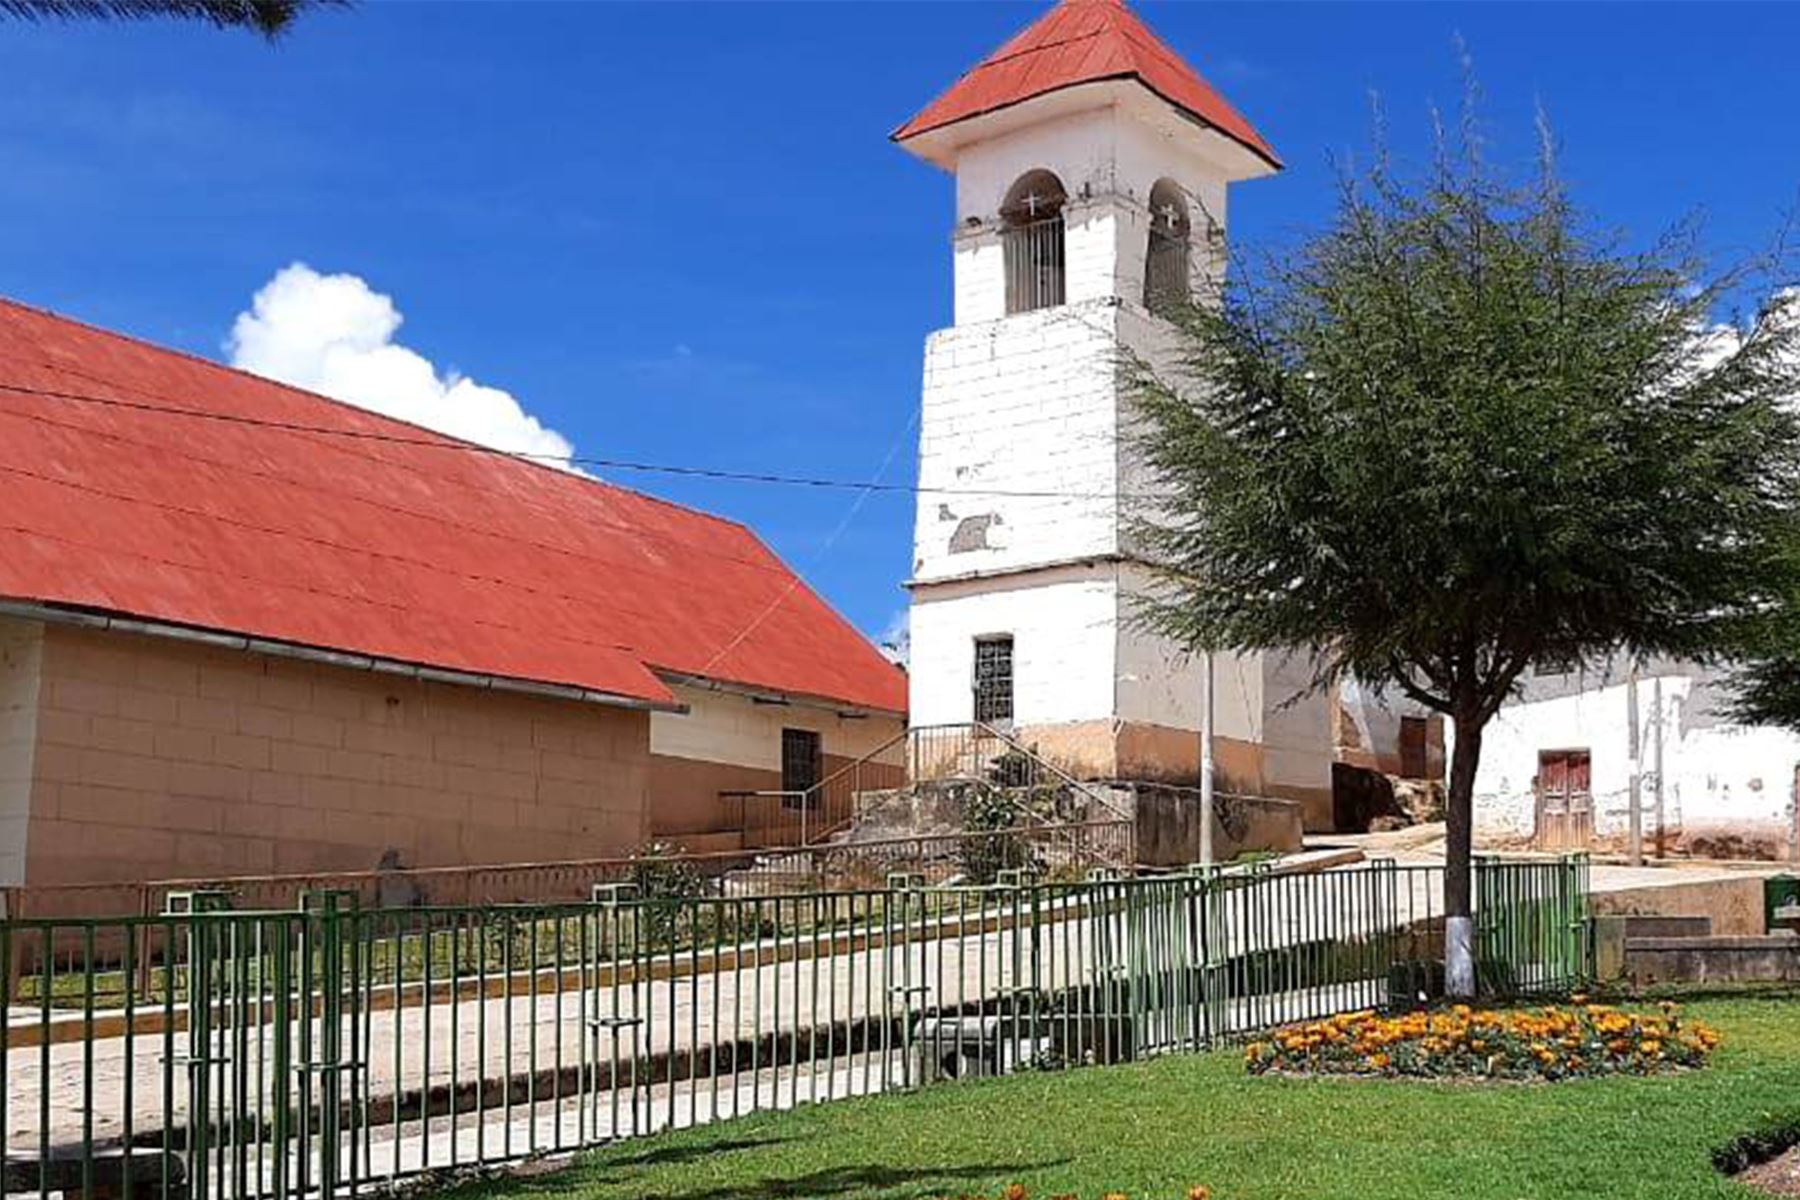 Plaza del distrito de Cayna, en la provincia de Ambo, región Huánuco. Foto: Municipalidad de Cayna